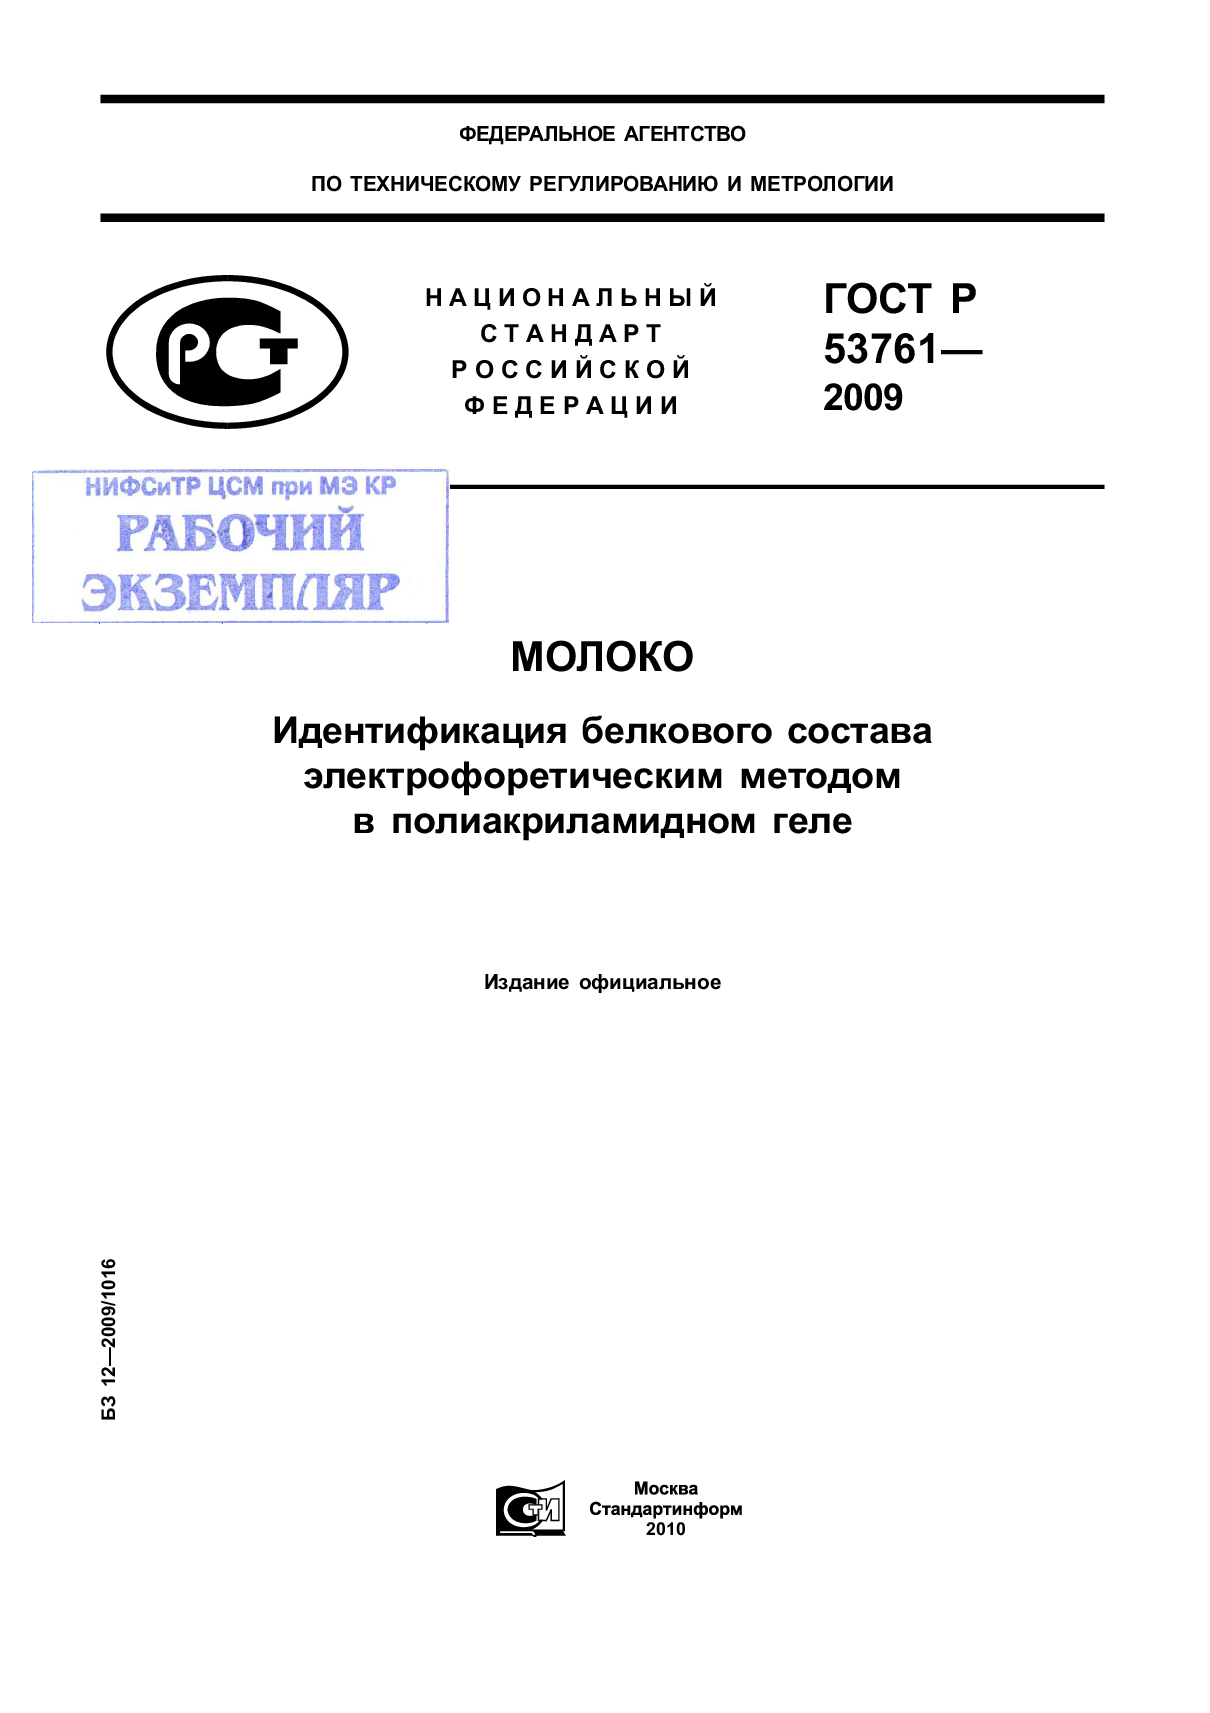 Молоко. Идентификация белкового состава электрофоретическим методом в полиакриламидном геле.